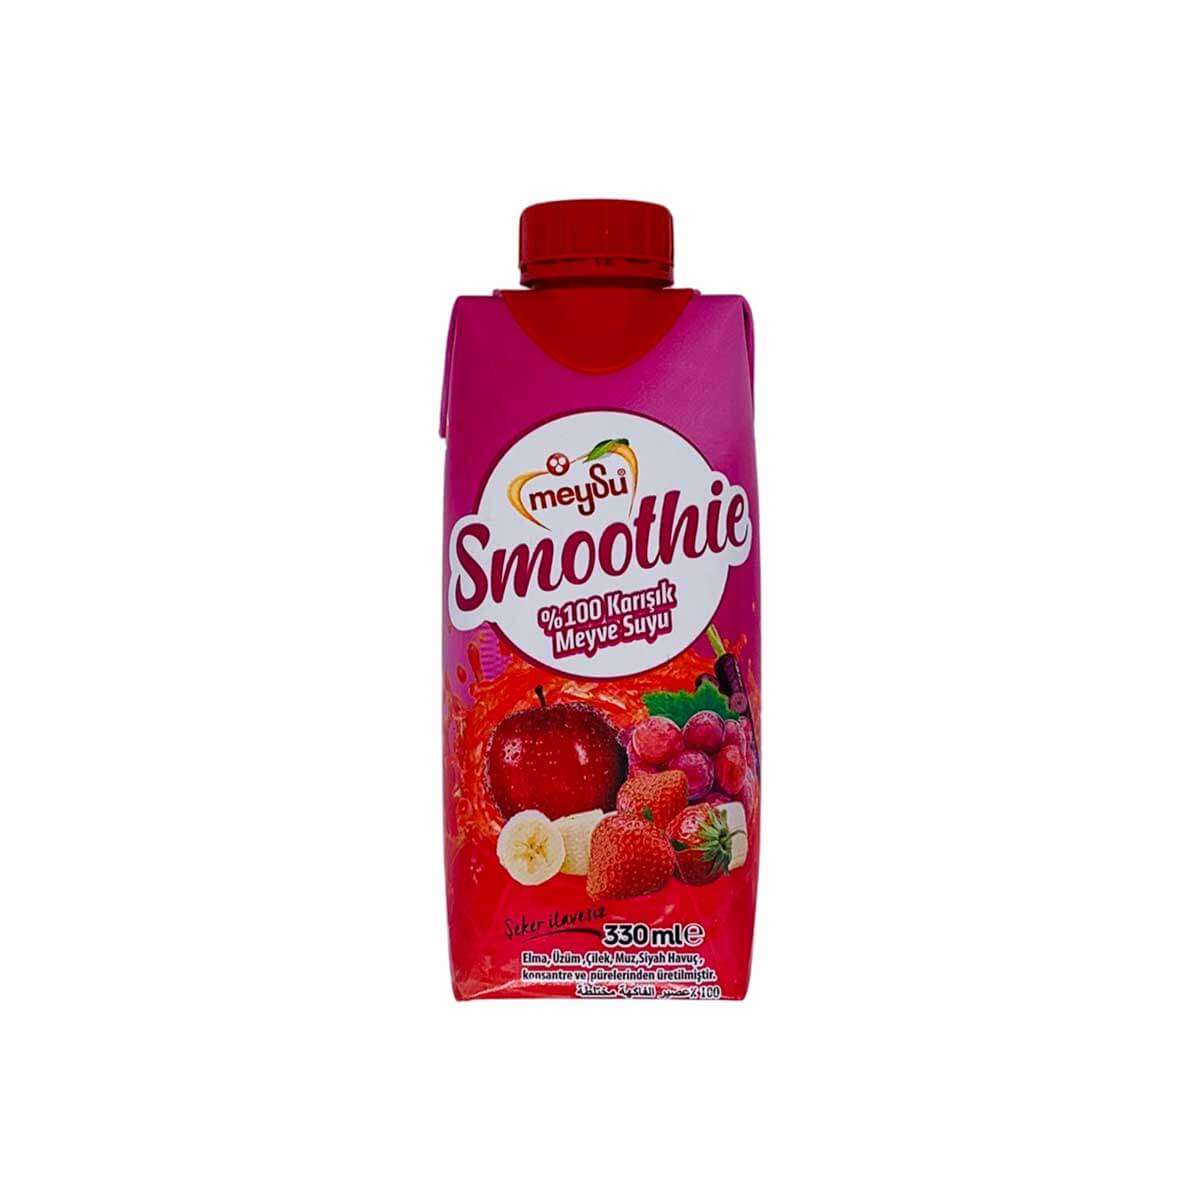 MEYSU 100% SMOOTHIE FRUITMIX JUICE (RED FRUIT) 330 ml » HalalTokyo